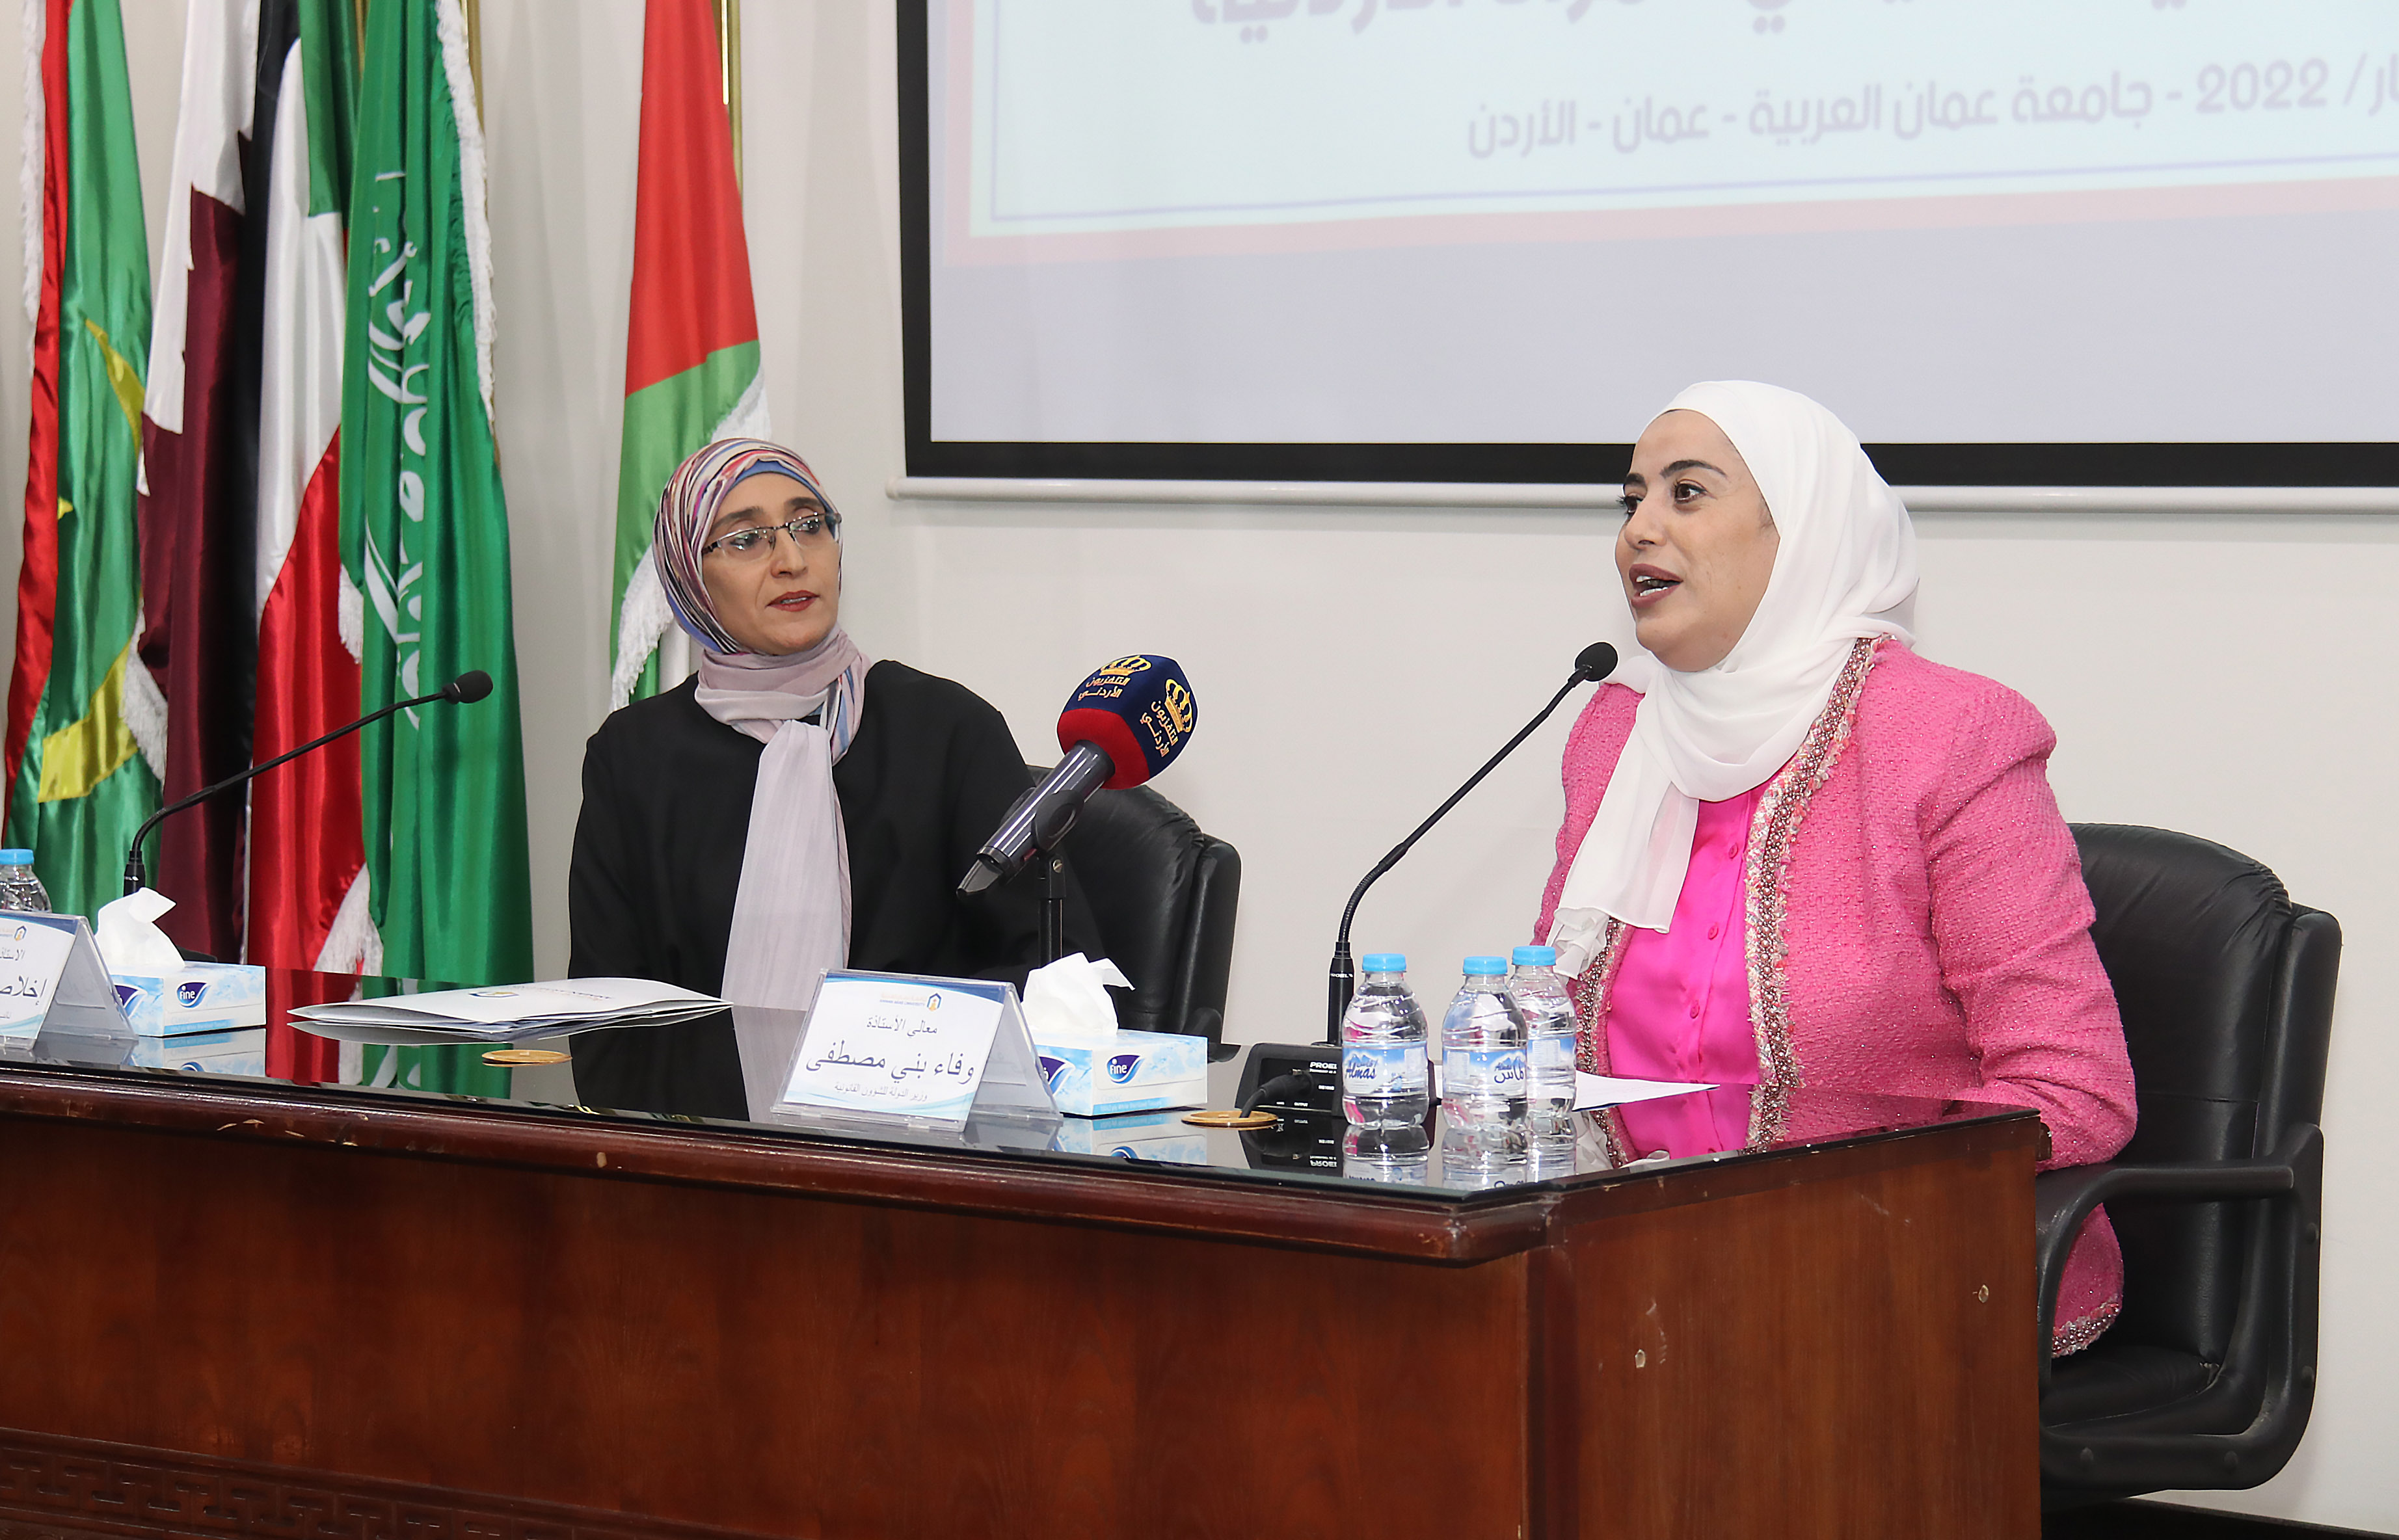 ندوة "التمكين السياسي والقيادي للمرأة الأردنية" في عمان العربية9